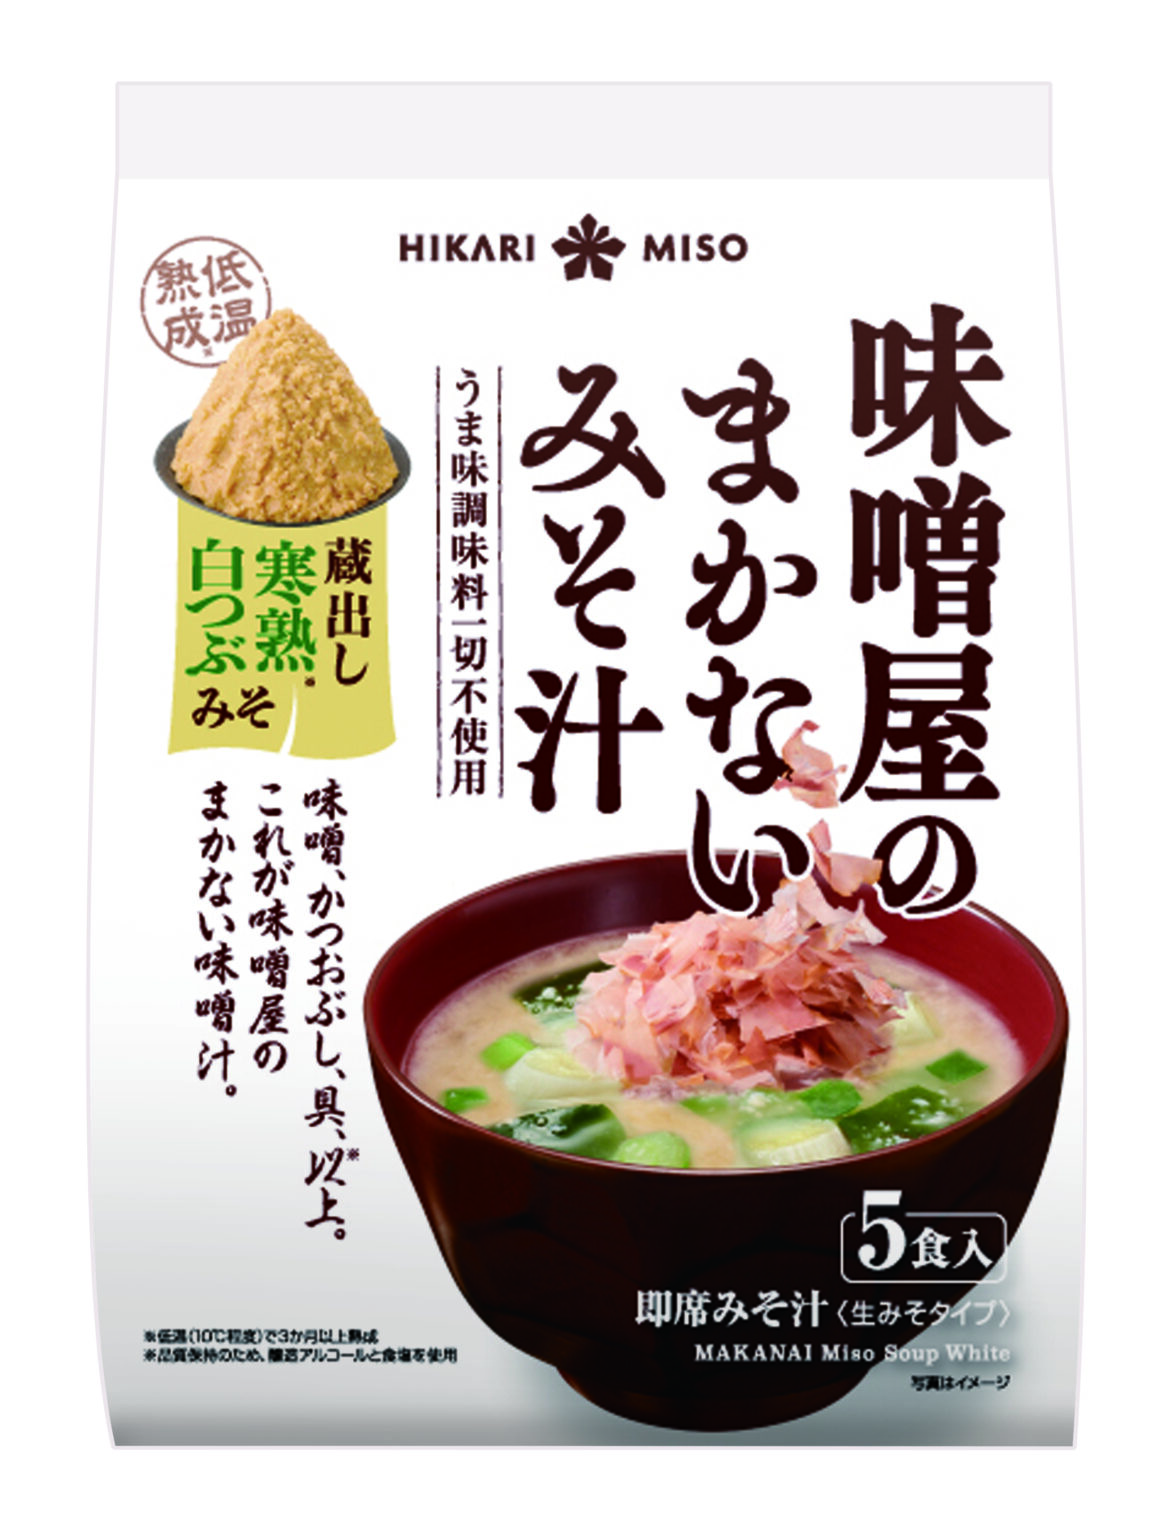 “Misoya no Makanai Miso Soup Kuradashi Kanjuku Shiro-tsubumiso" is now ...